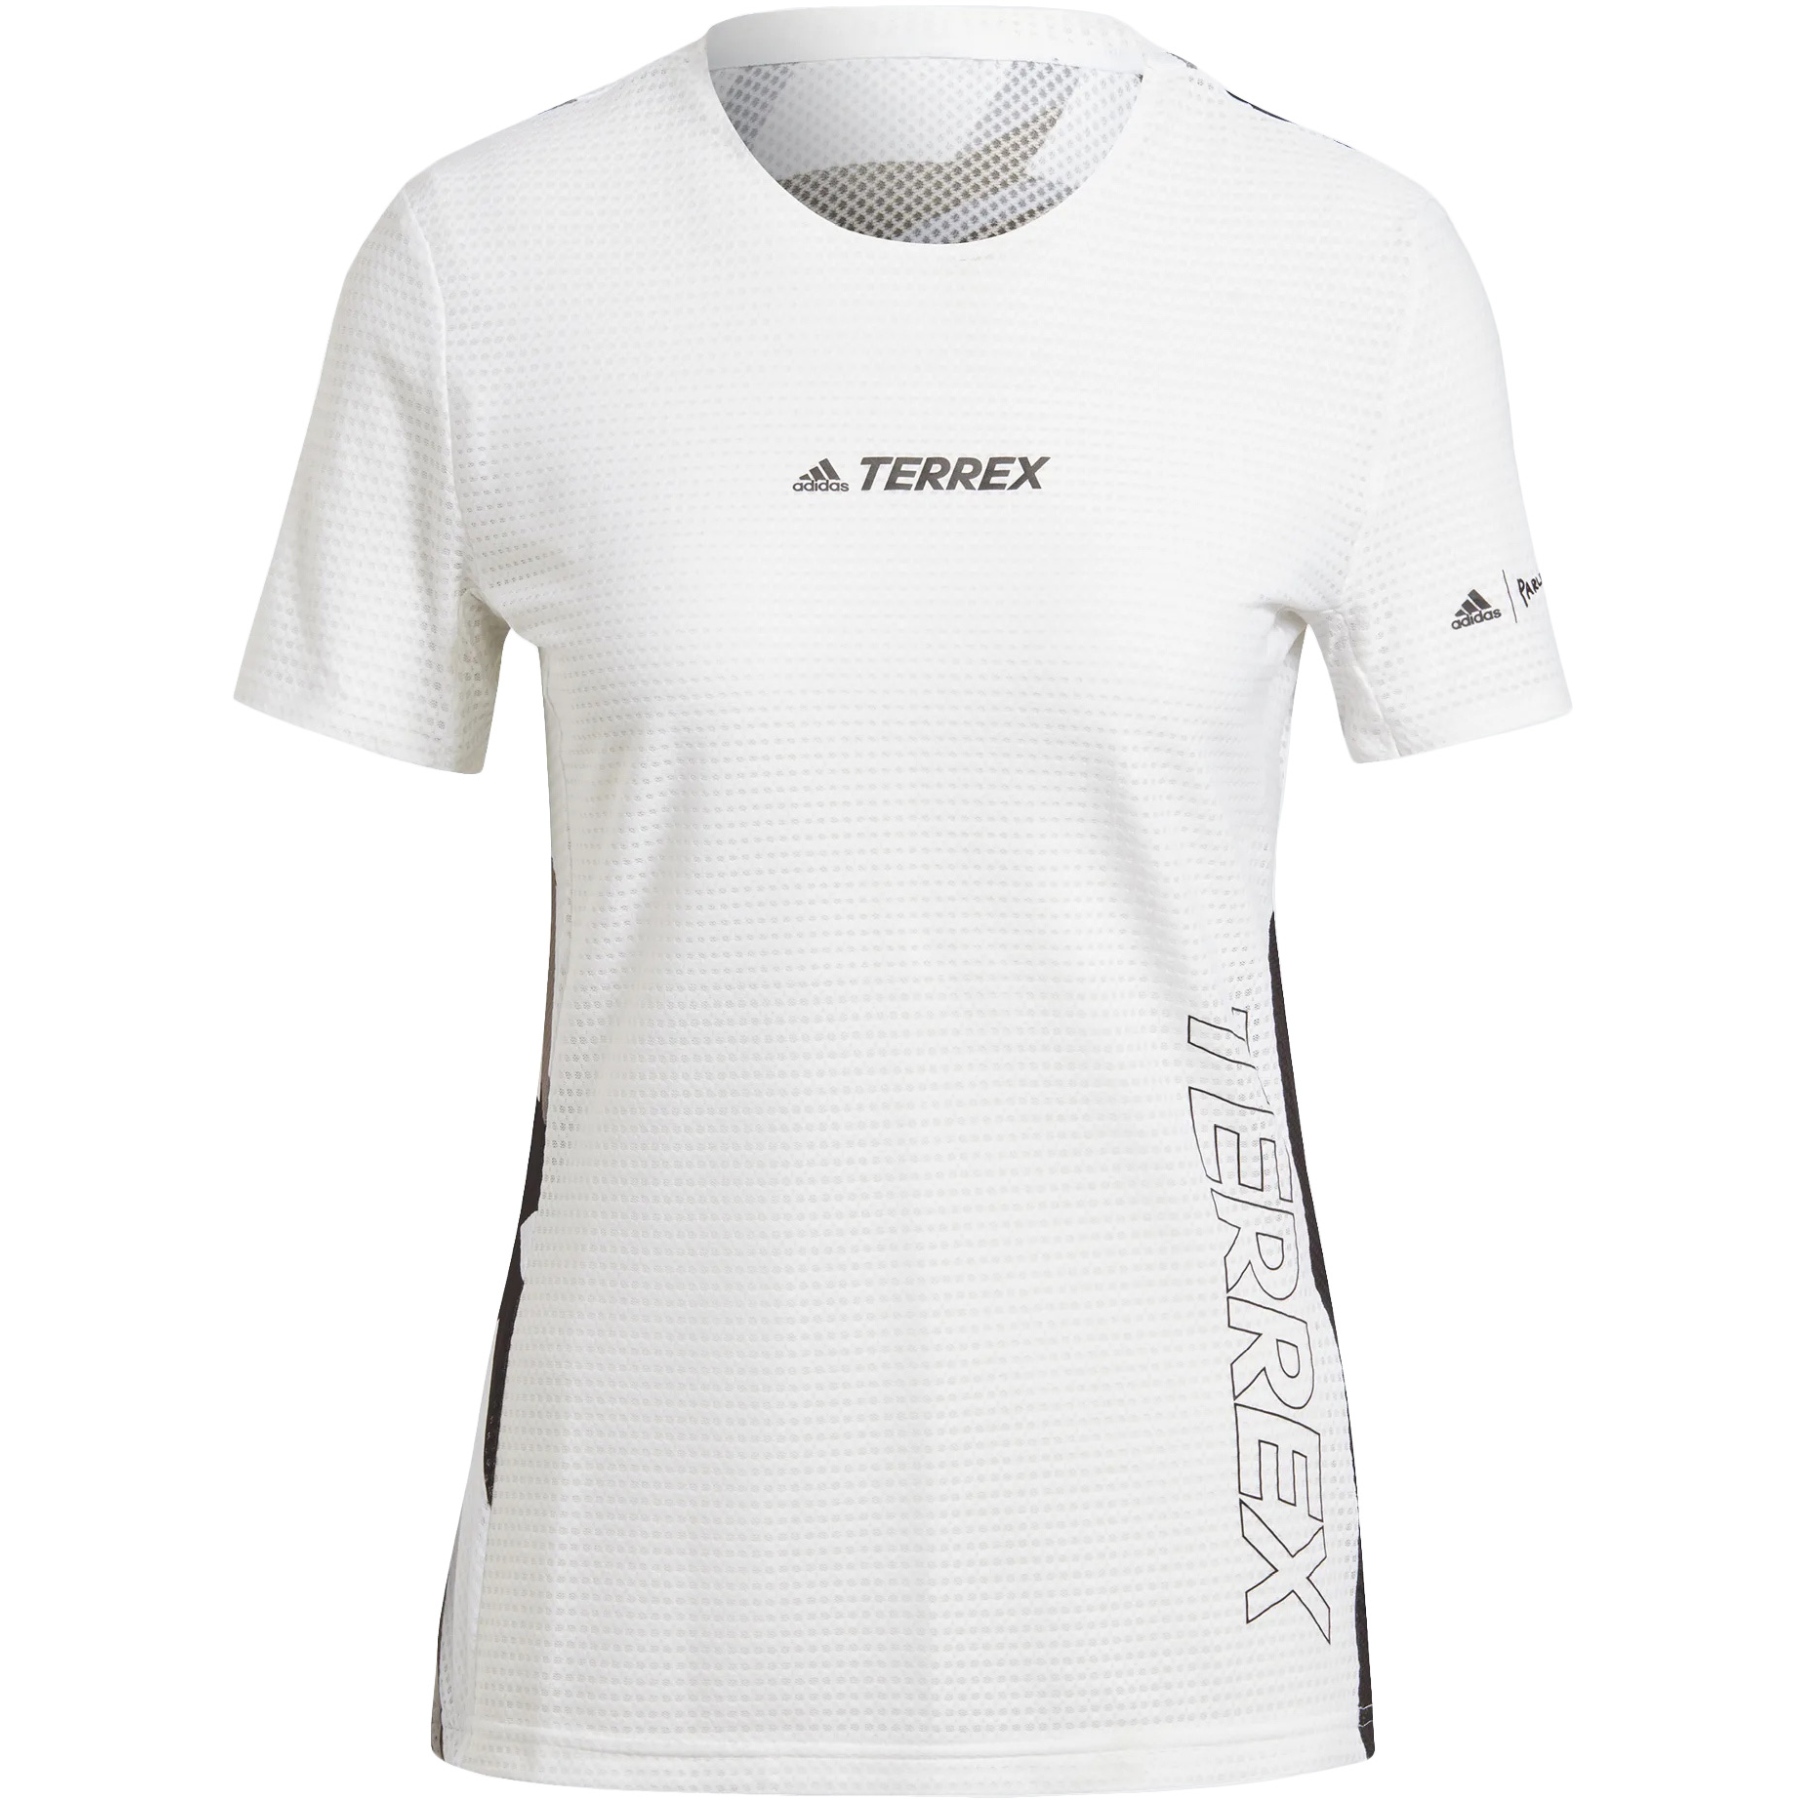 Bild von adidas TERREX Parley Agravic Trail Running Pro T-Shirt Damen - white/black GL1211